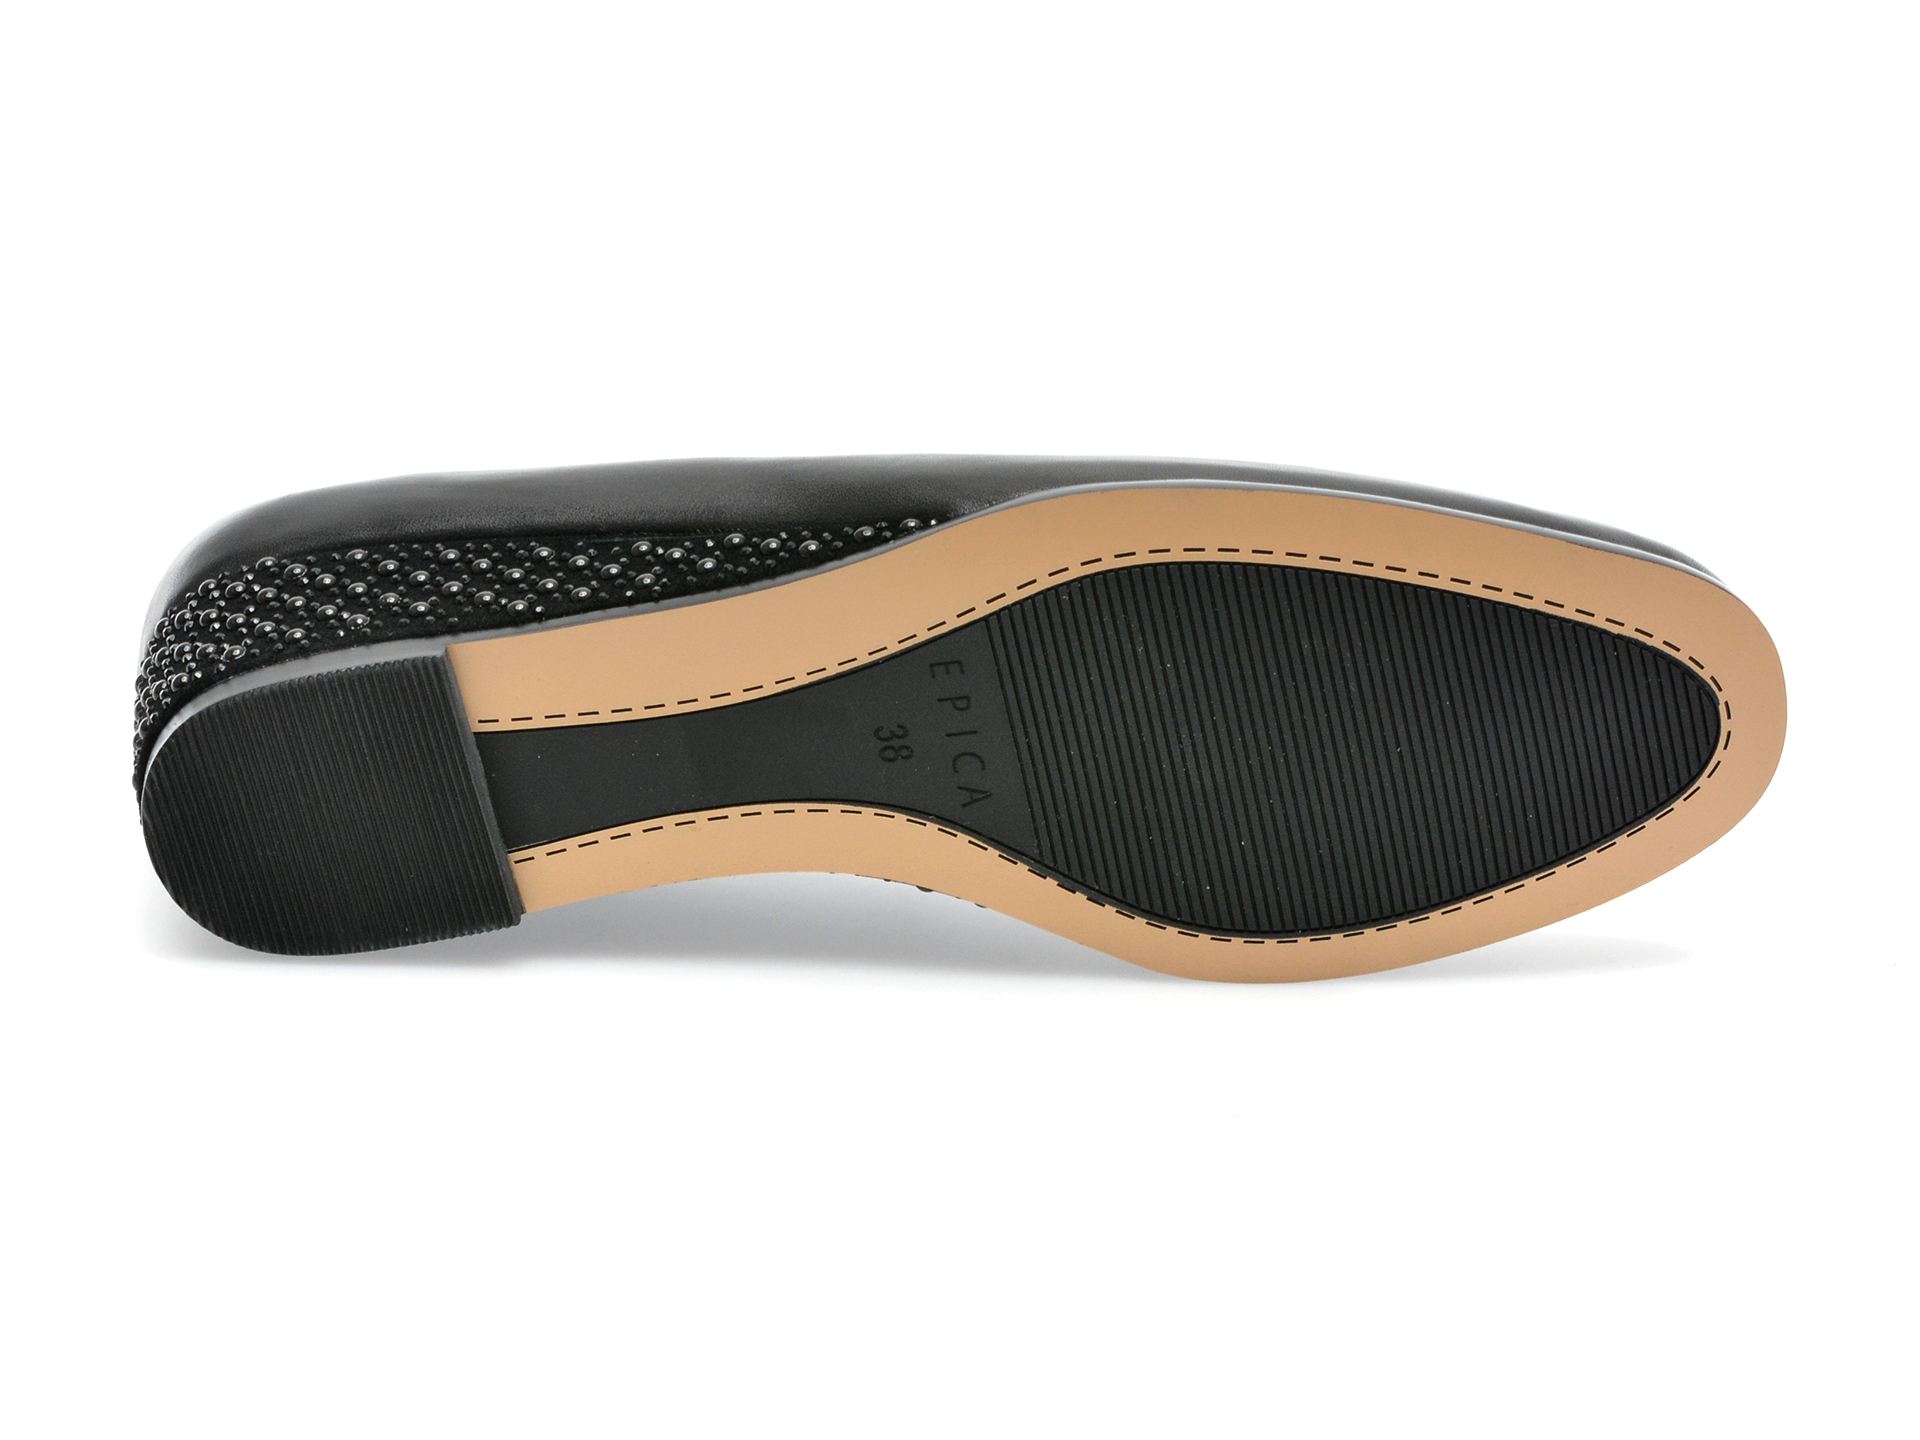 Pantofi EPICA negri, JY20014, din piele naturala